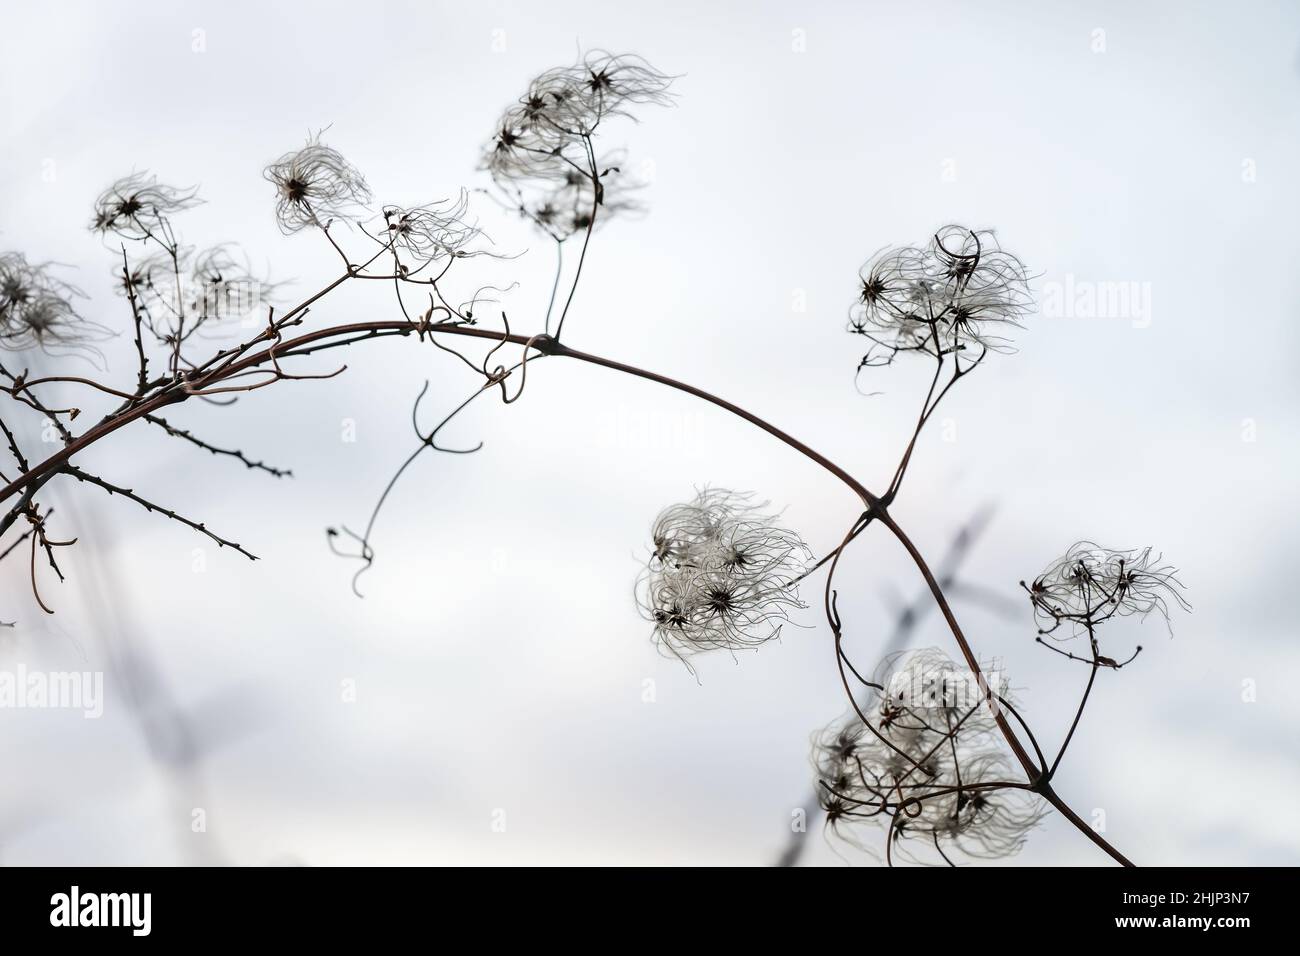 Bel ramo arciante con filigrana infruttescenza della clematide selvaggia (Clematis vitalba) su sfondo grigio chiaro in inverno e primavera, co Foto Stock